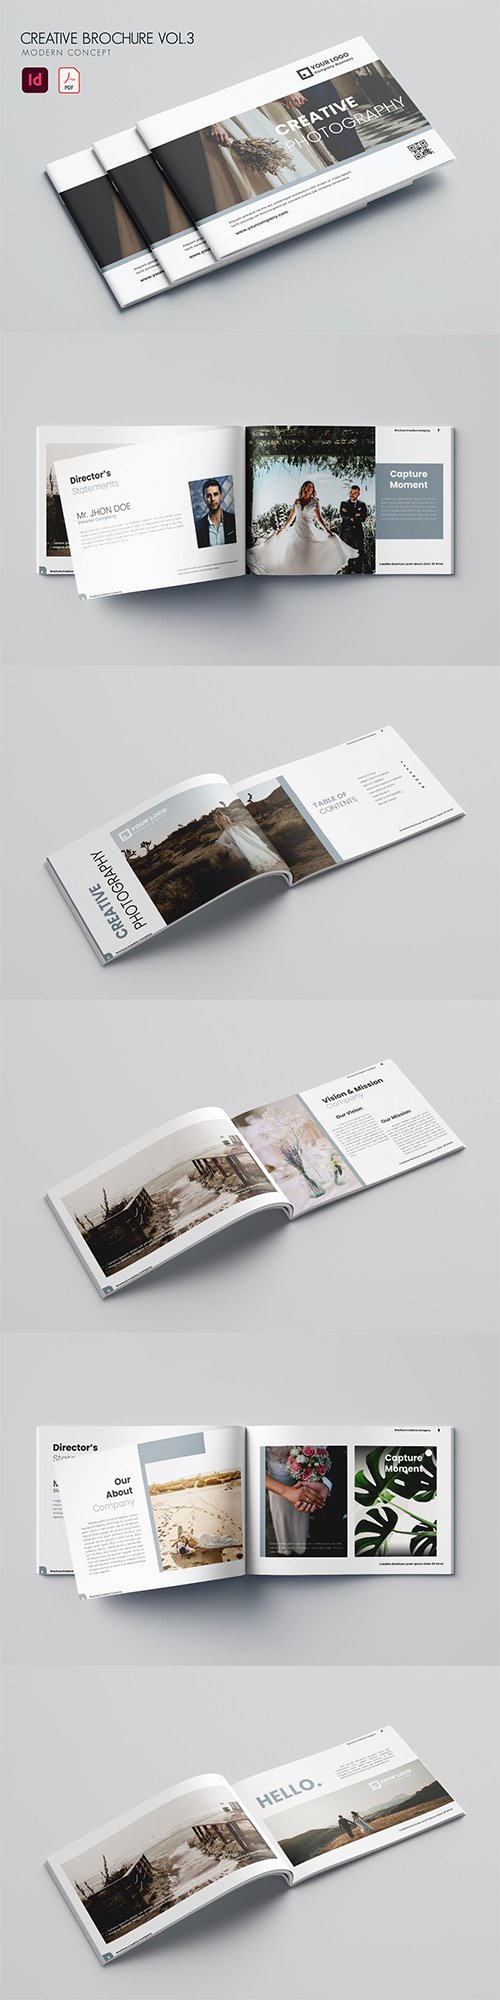 Creative Brochure Vol.3 P3TDL5A